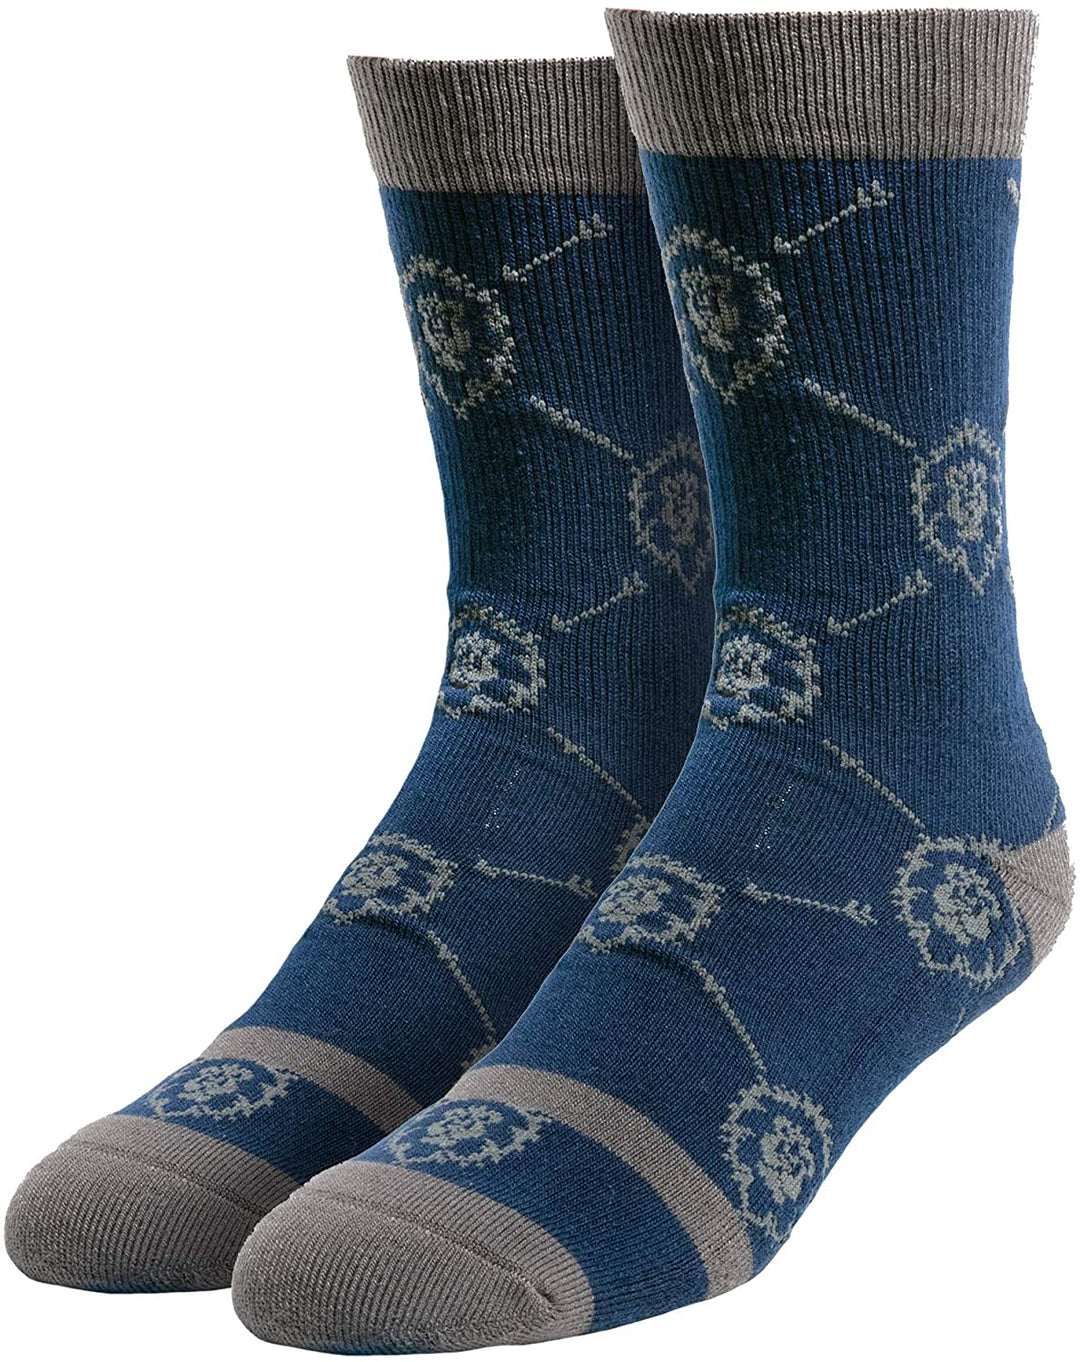 JINX World of Warcraft Alliance Unisex Socken Blau, 77% Polyester, 12% Baumwolle,